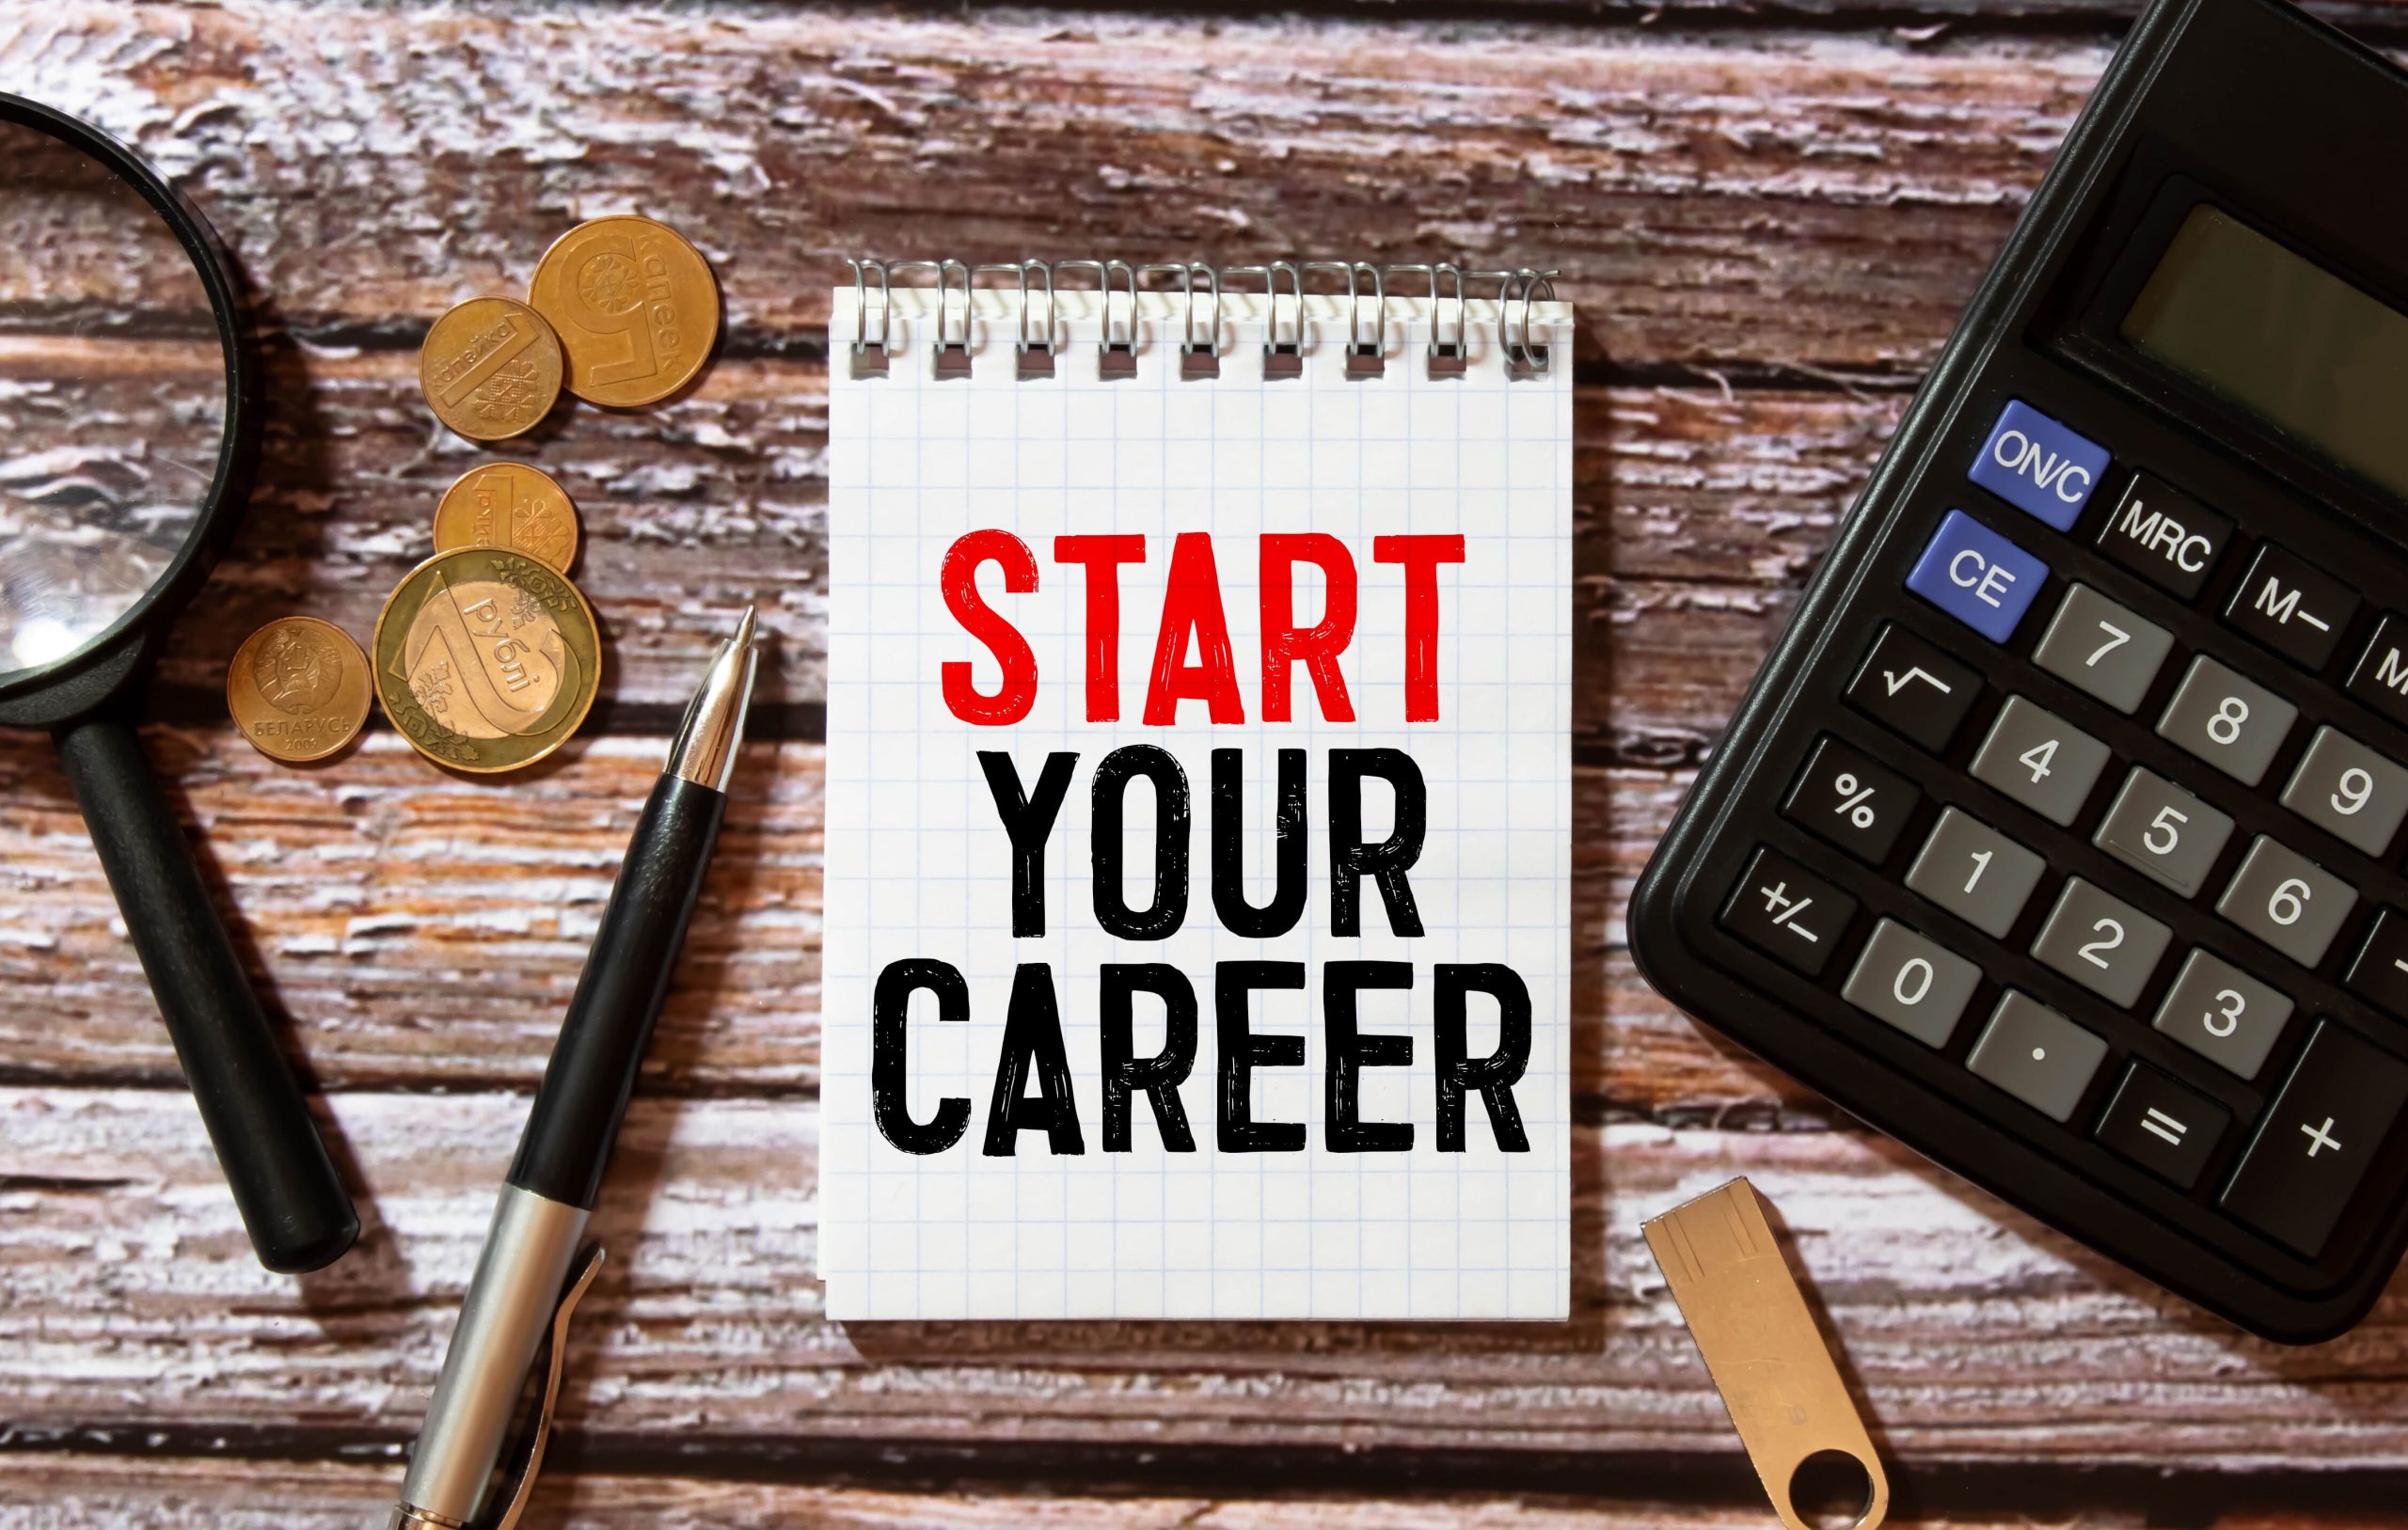 Start your own career